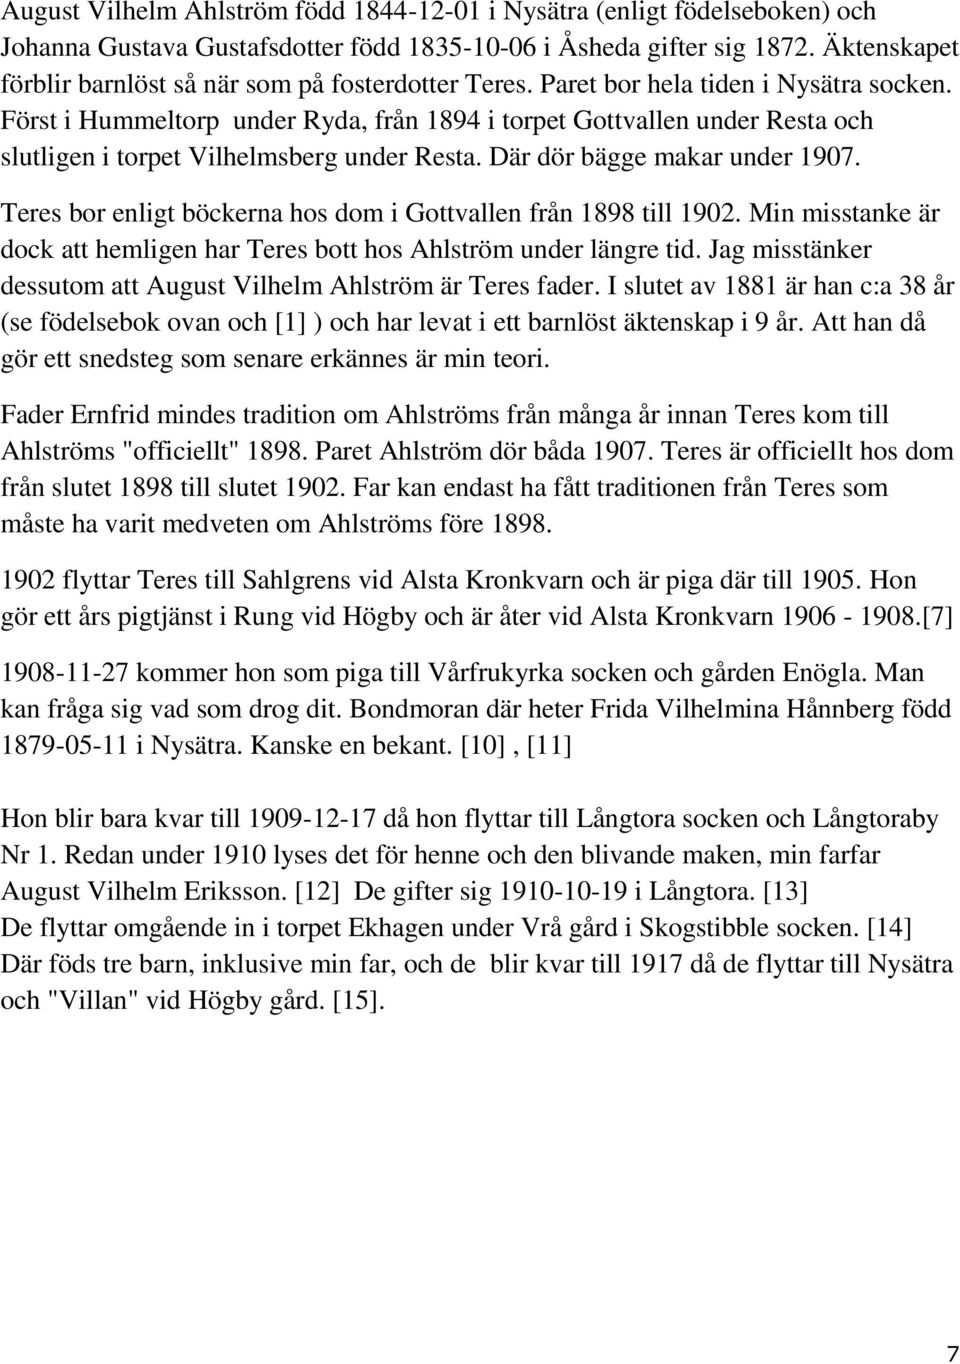 Först i Hummeltorp under Ryda, från 1894 i torpet Gottvallen under Resta och slutligen i torpet Vilhelmsberg under Resta. Där dör bägge makar under 1907.